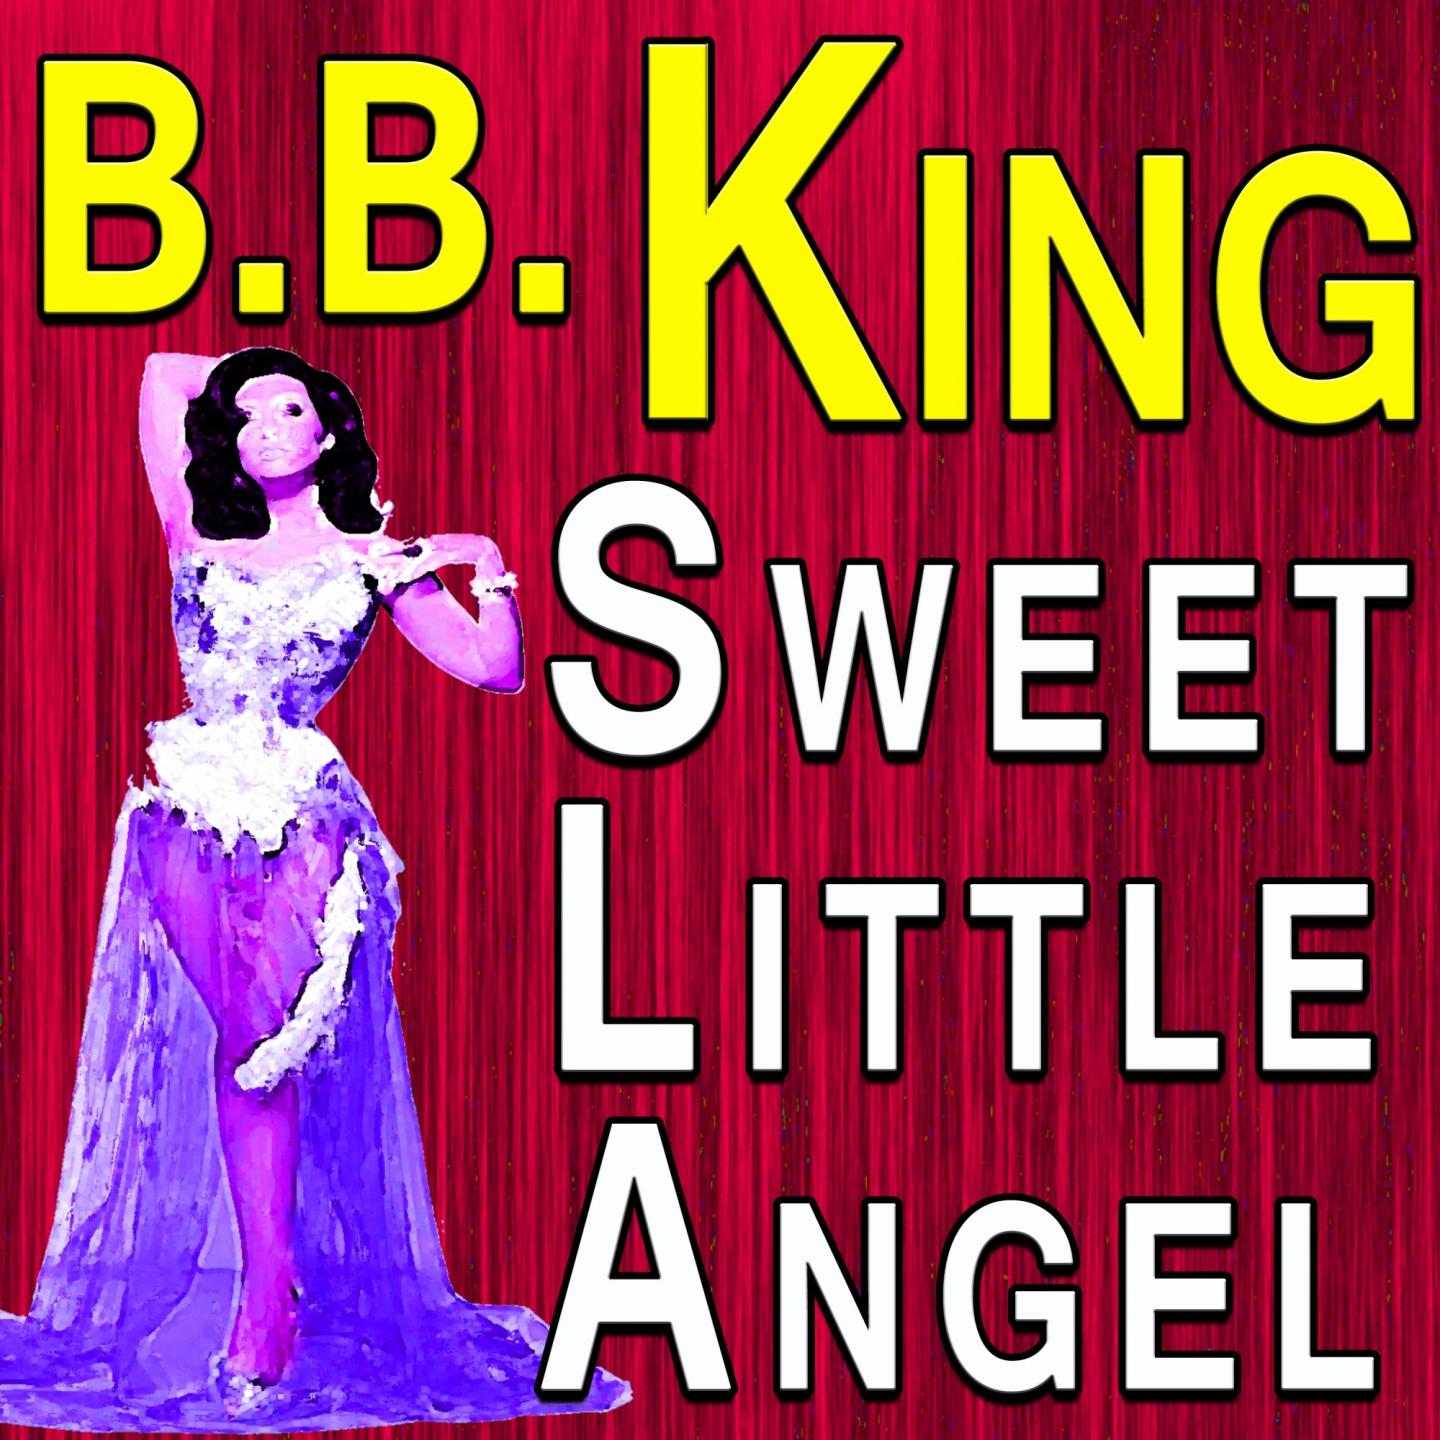 B.B. King Sweet Little Angel